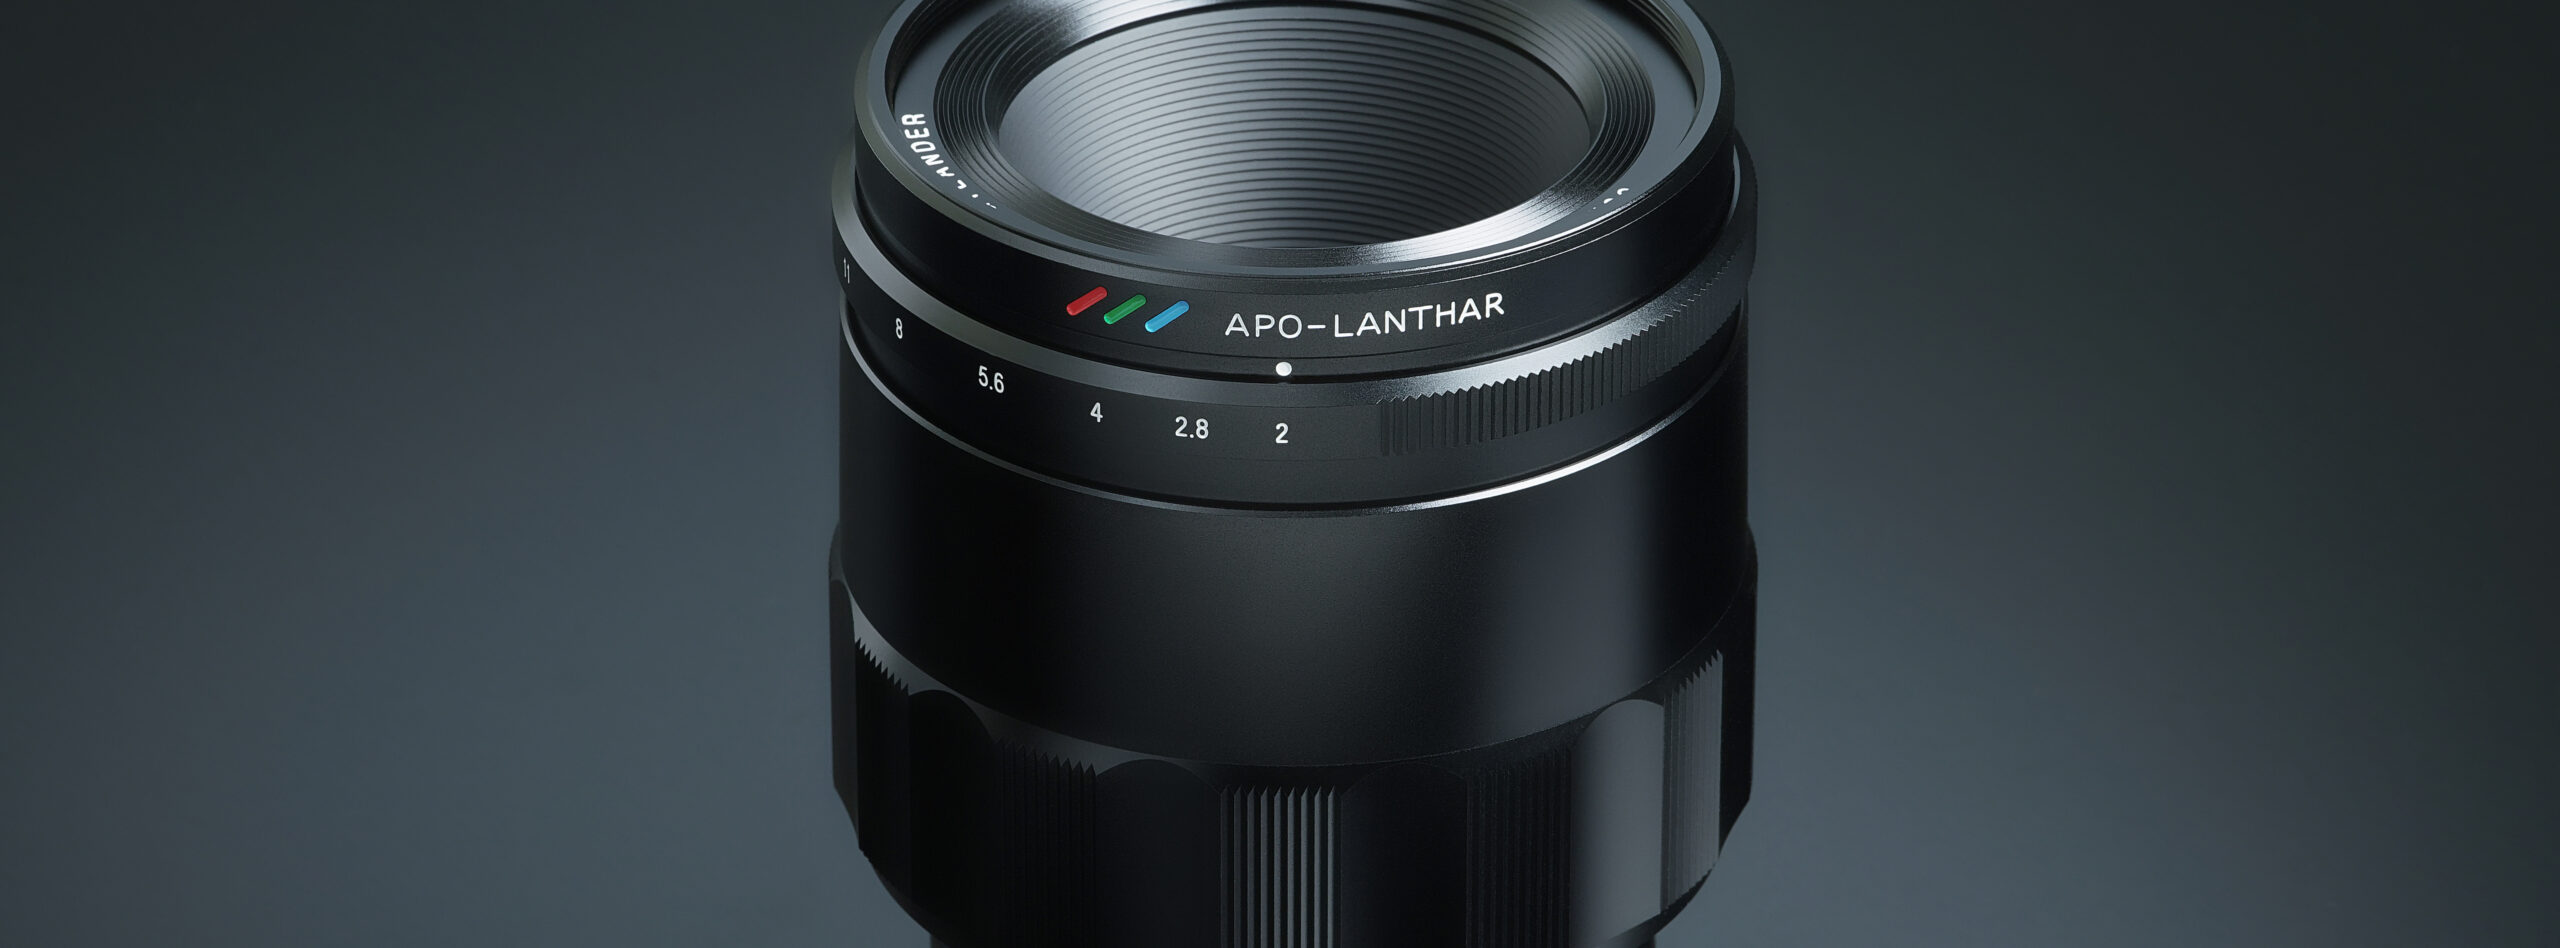 VoightLander MACRO APO-LANTHAR 65mm F2 Aspherical E-mount 233041 ビデオカメラ